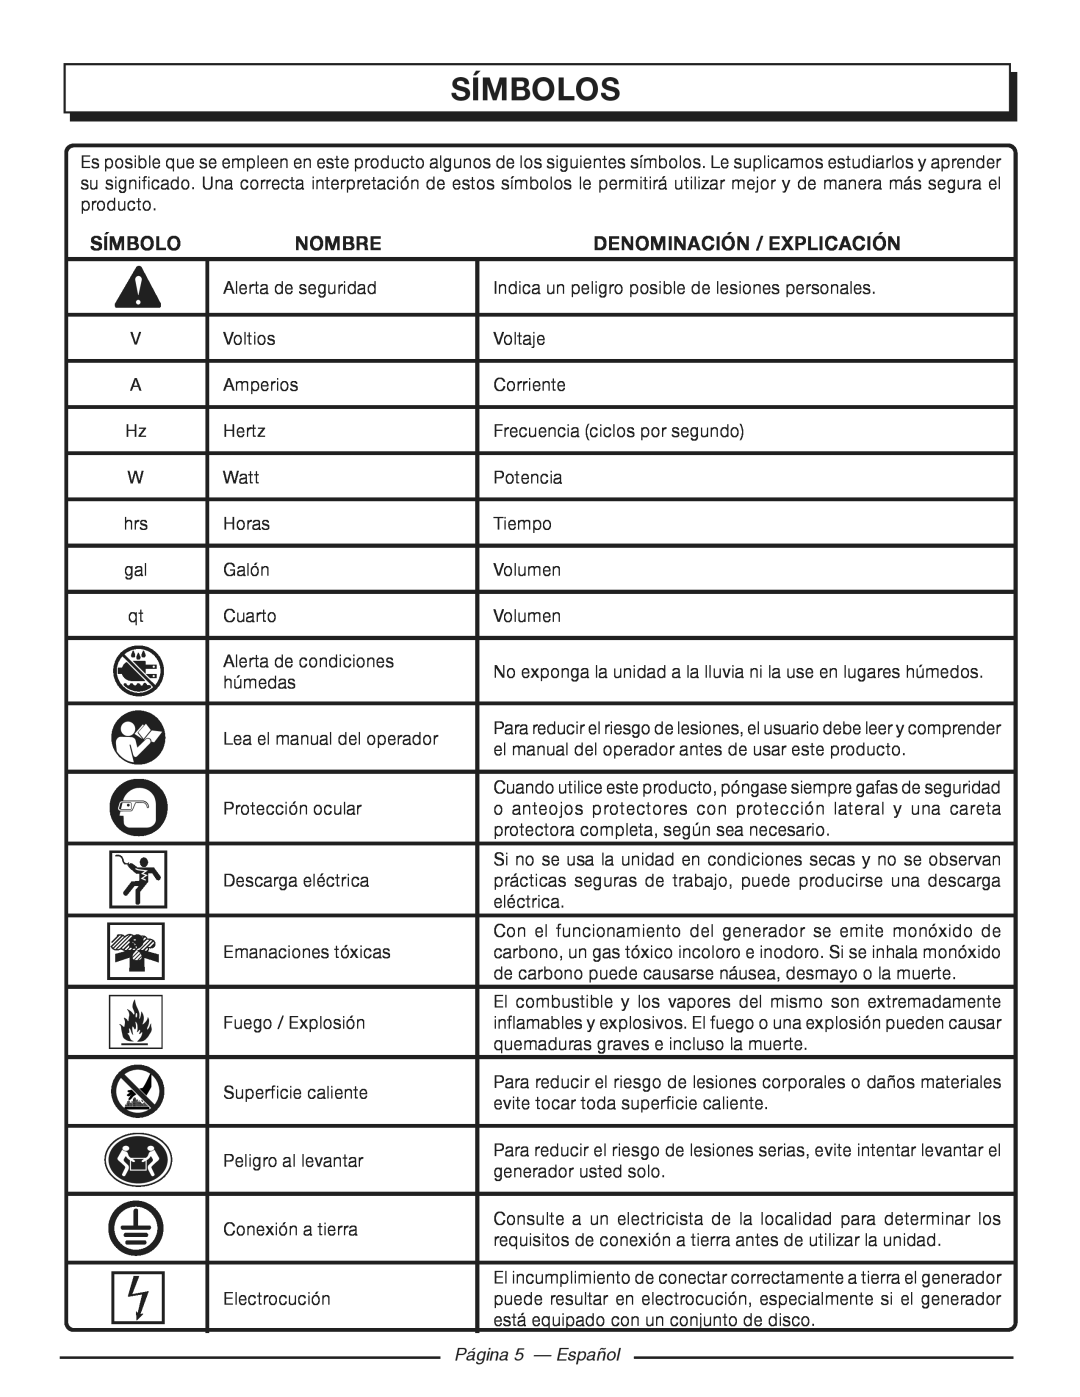 Homelite HGCA3000 manuel dutilisation Símbolos, Nombre, Denominación / Explicación, Página 5 - Español 